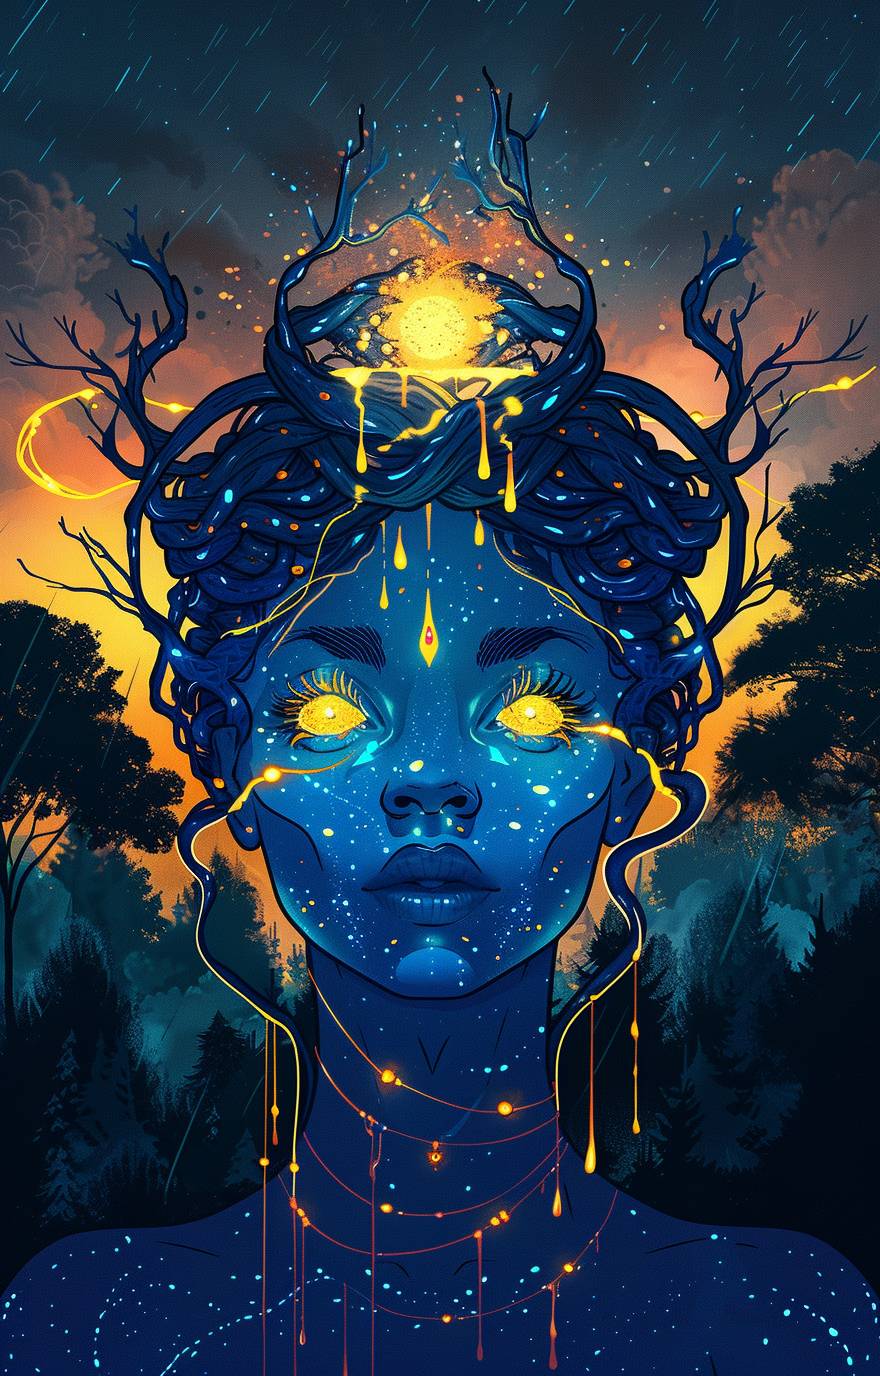 青い肌の宇宙人の女性で、発光する目と葡萄の葉が絡まった華やかな王冠を被っている。頭の各髪の毛から金の雫が垂れ、顔の一側に落ちている。背景には夜の暗い森があり、木々が星にシルエットとして映っている。空は日の出または日没のように橙色に輝いている。彼女を取り巻くのは神秘的な雰囲気で、ファンタジーアニメ風